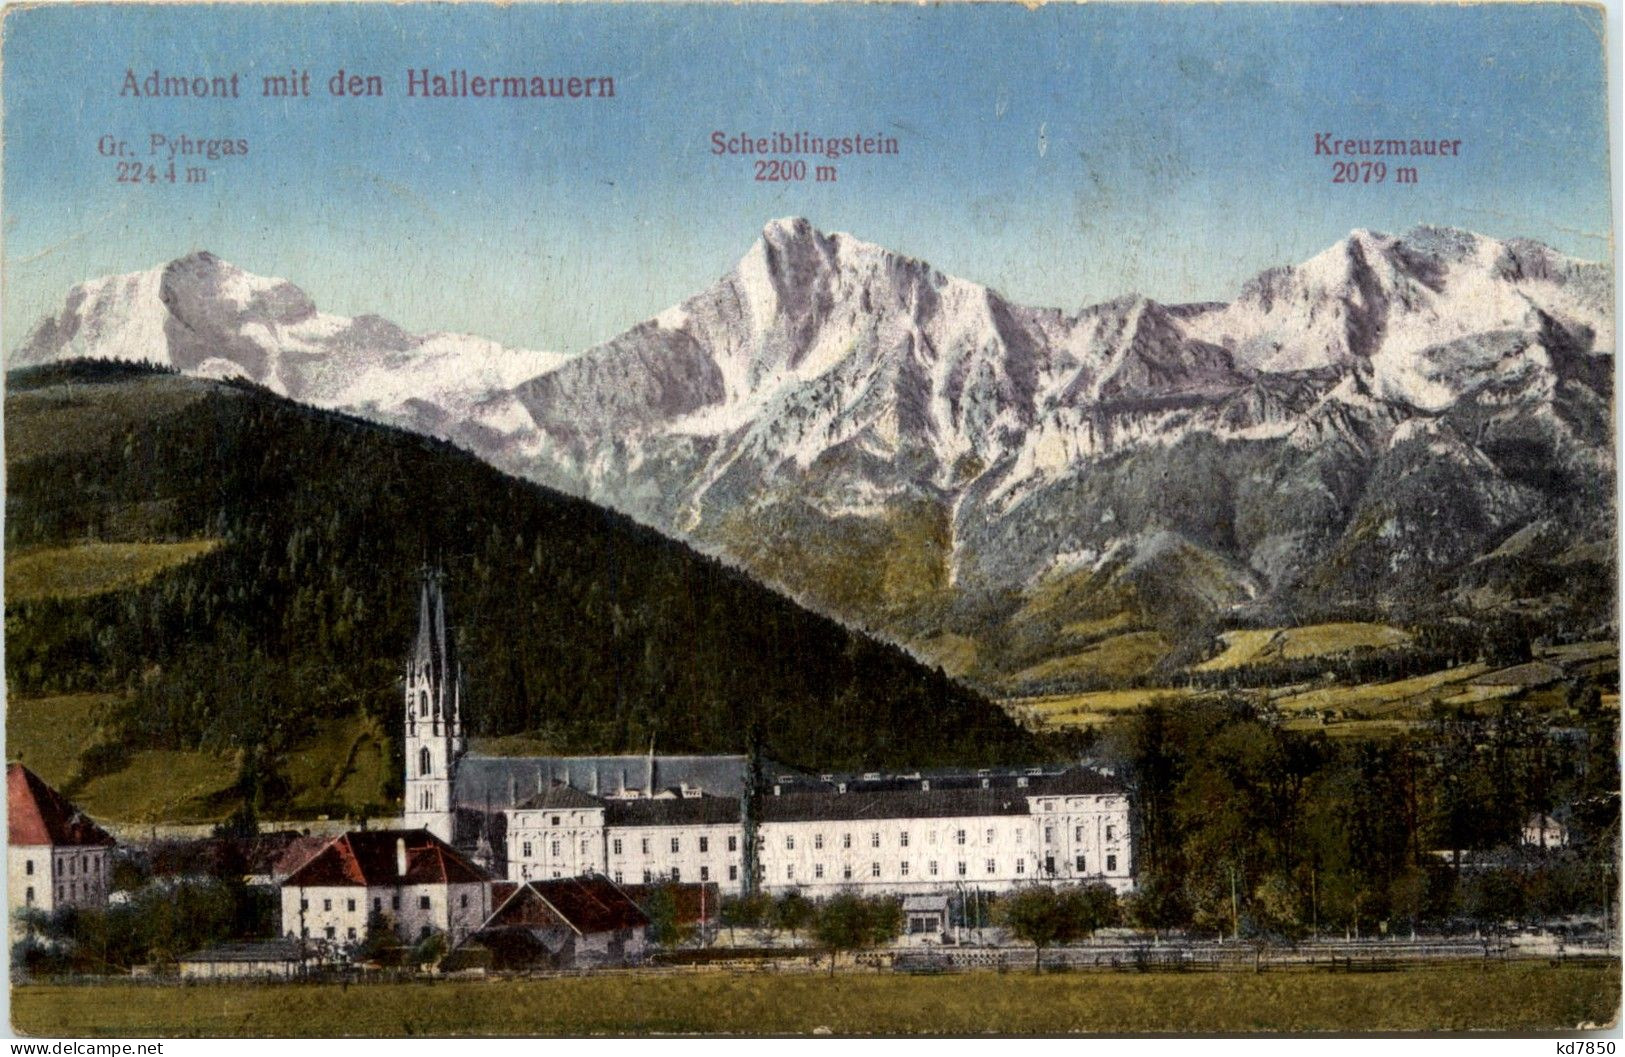 Admont/Steiermark - Admont, M.d. Hallermauern - Admont